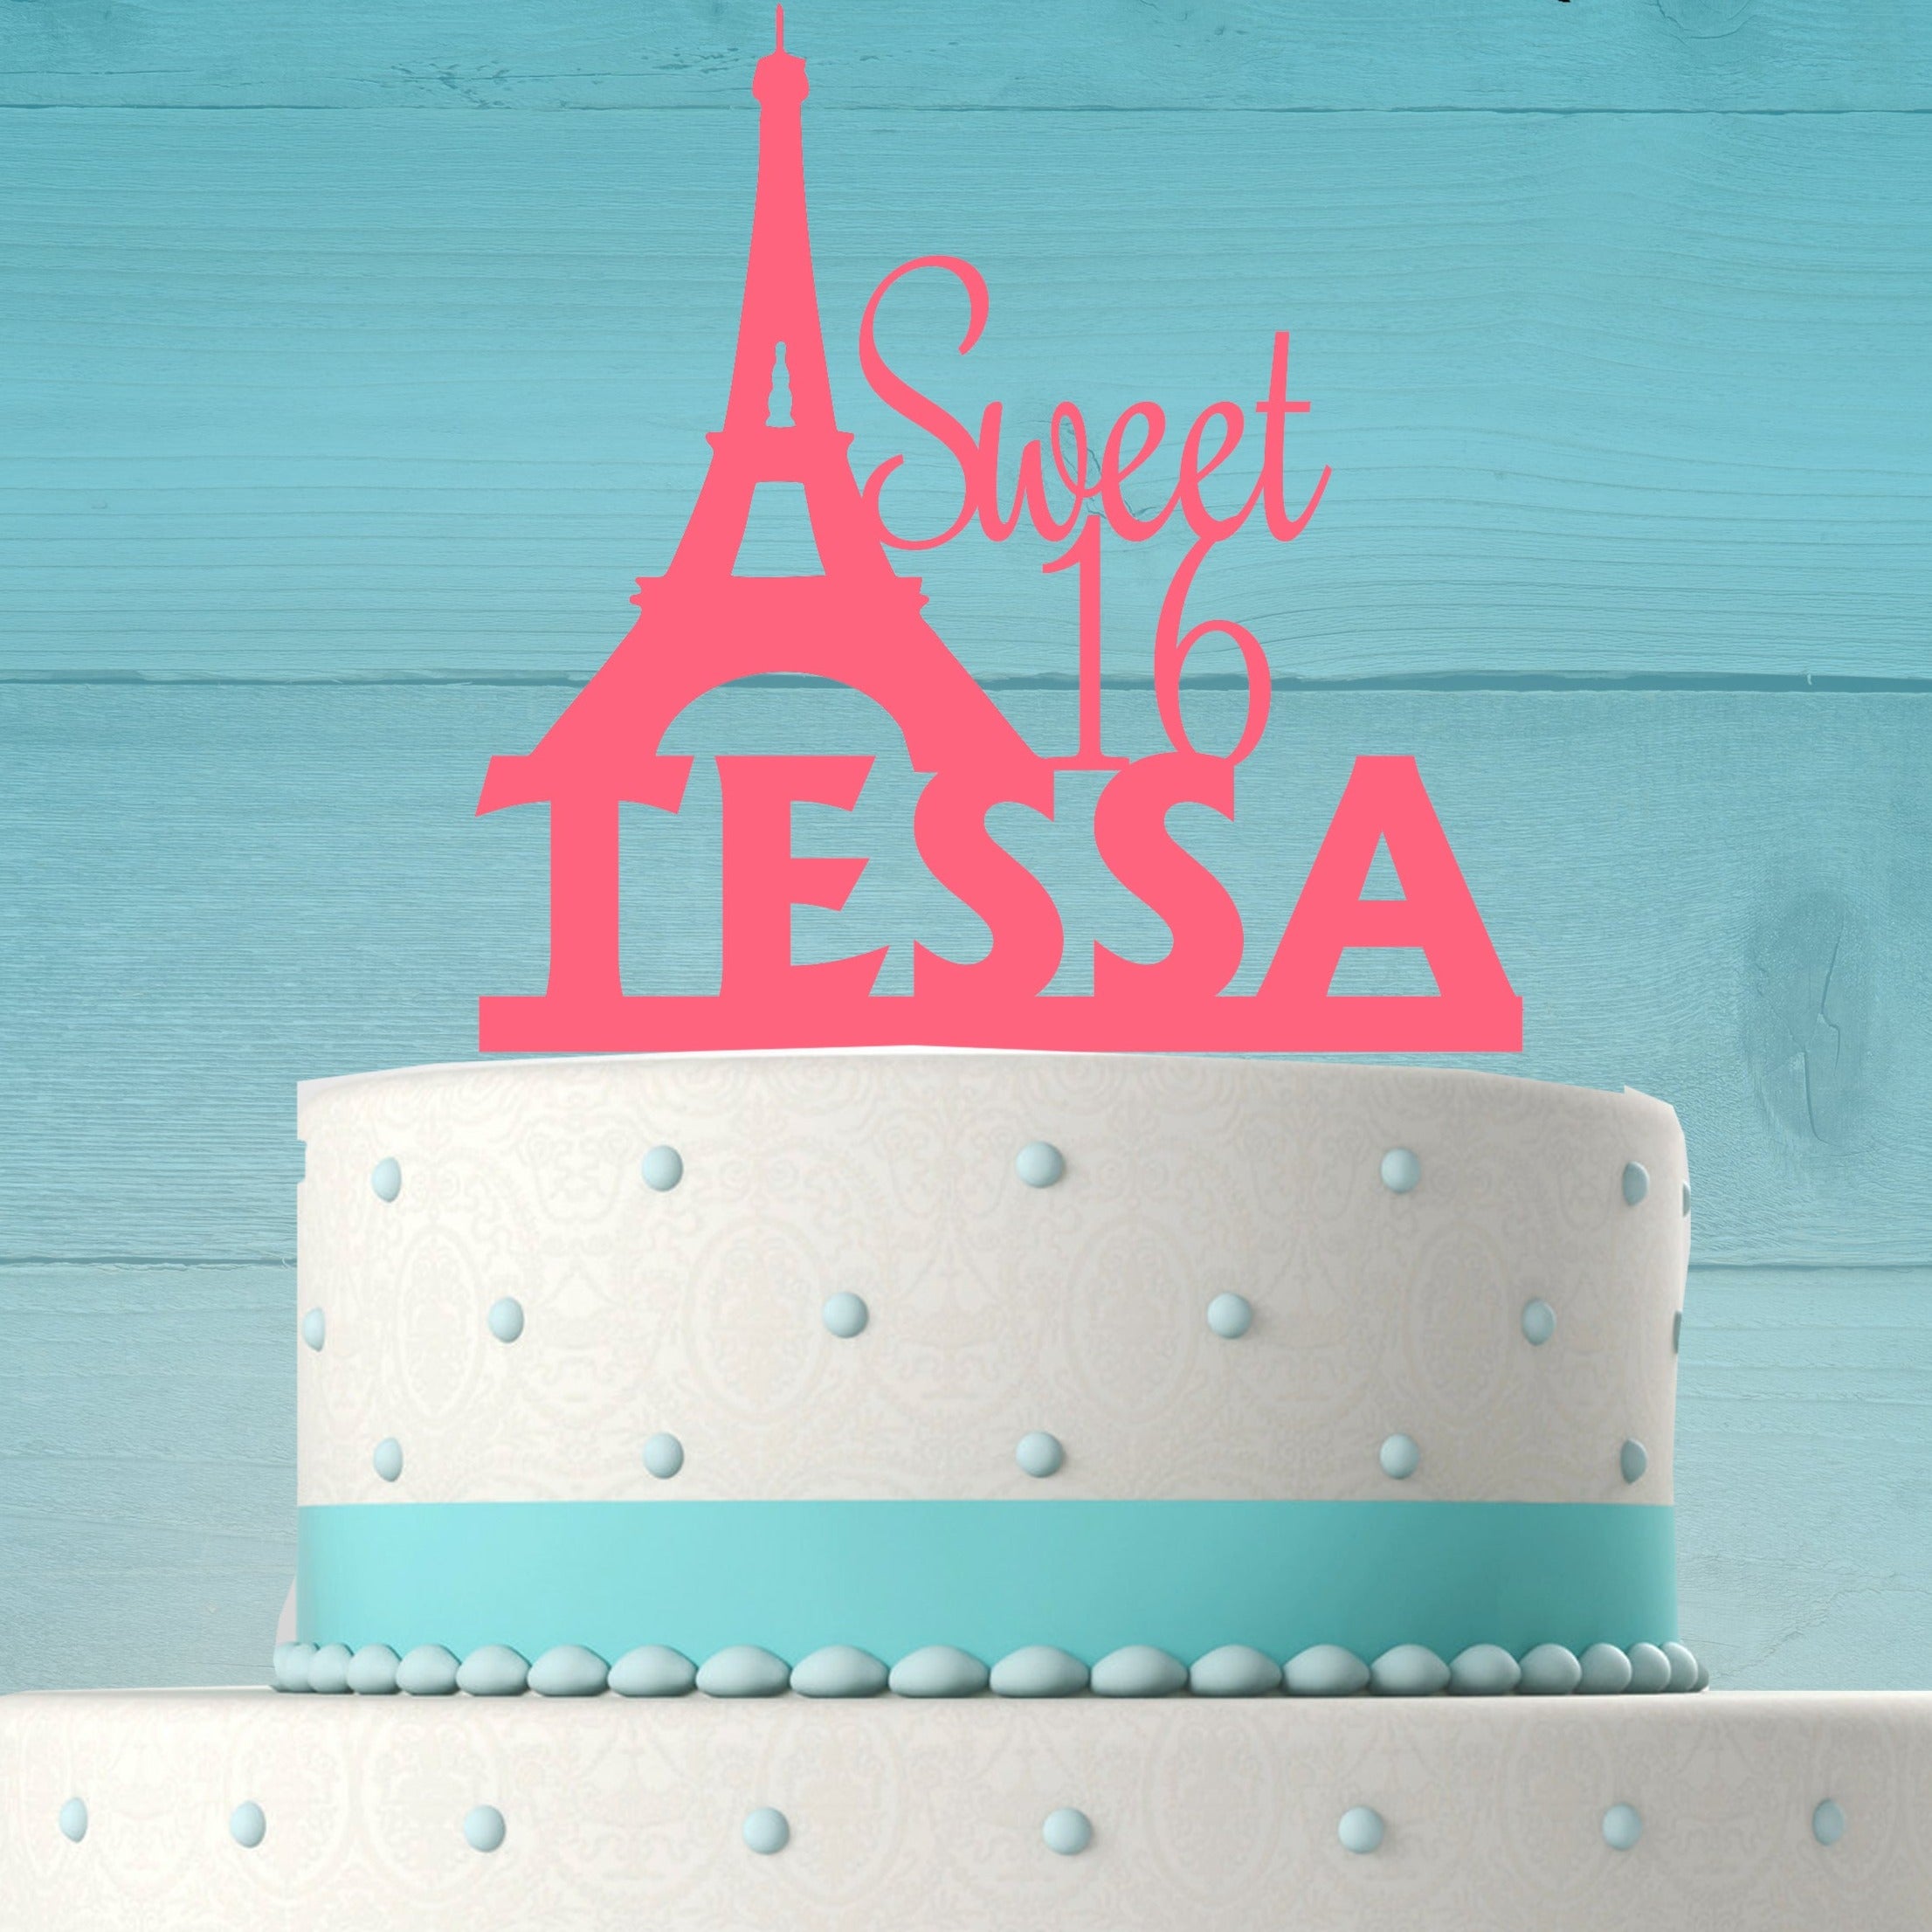 Top Paris Cakes - CakeCentral.com